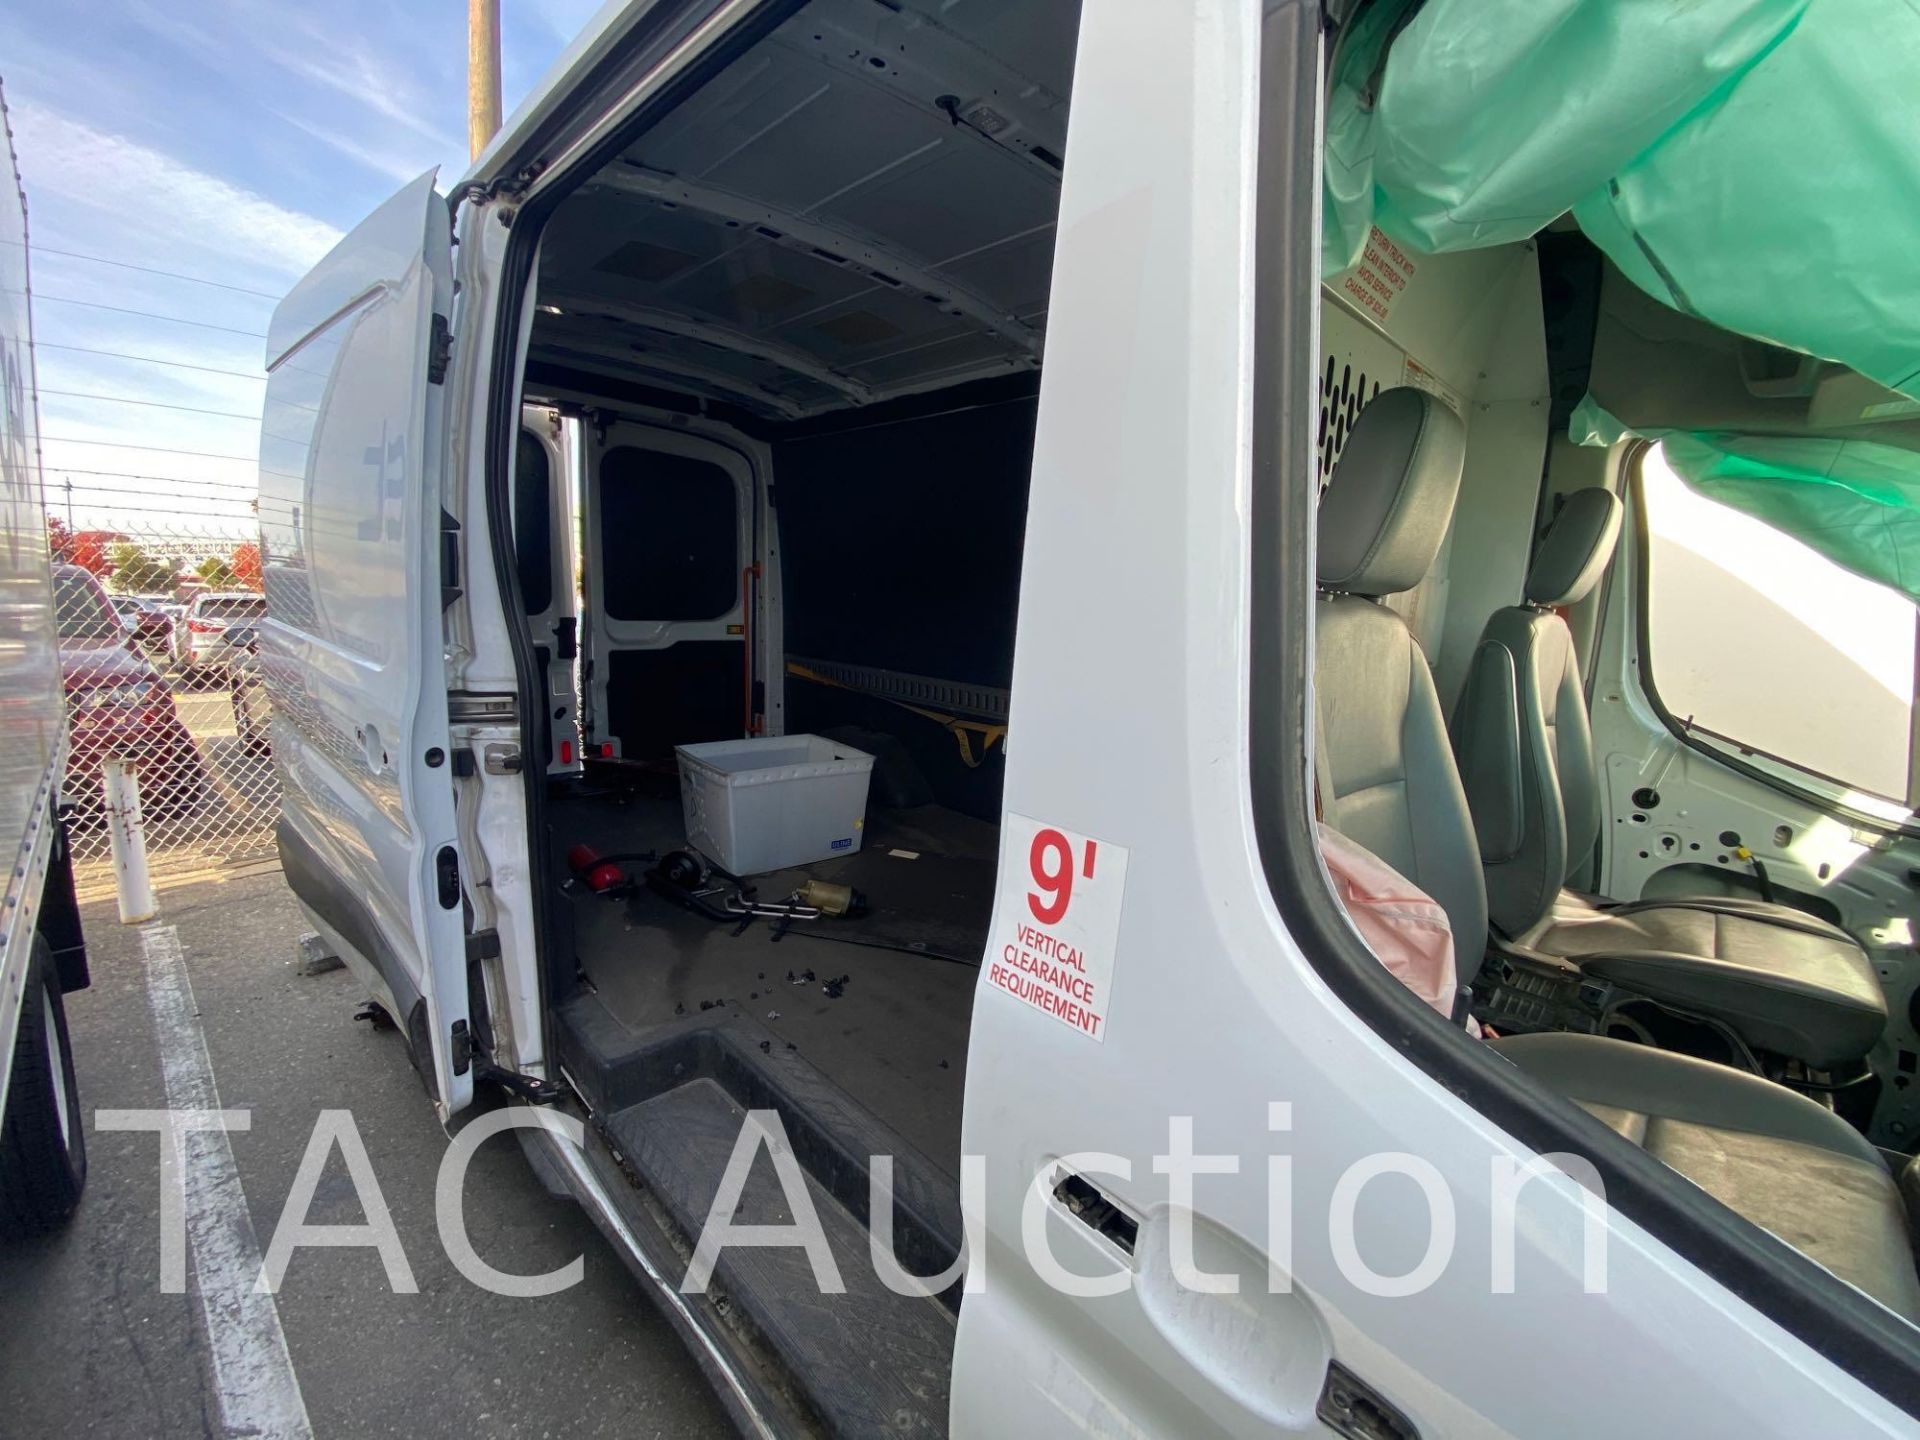 2019 Ford Transit 150 Cargo Van - Image 46 of 84